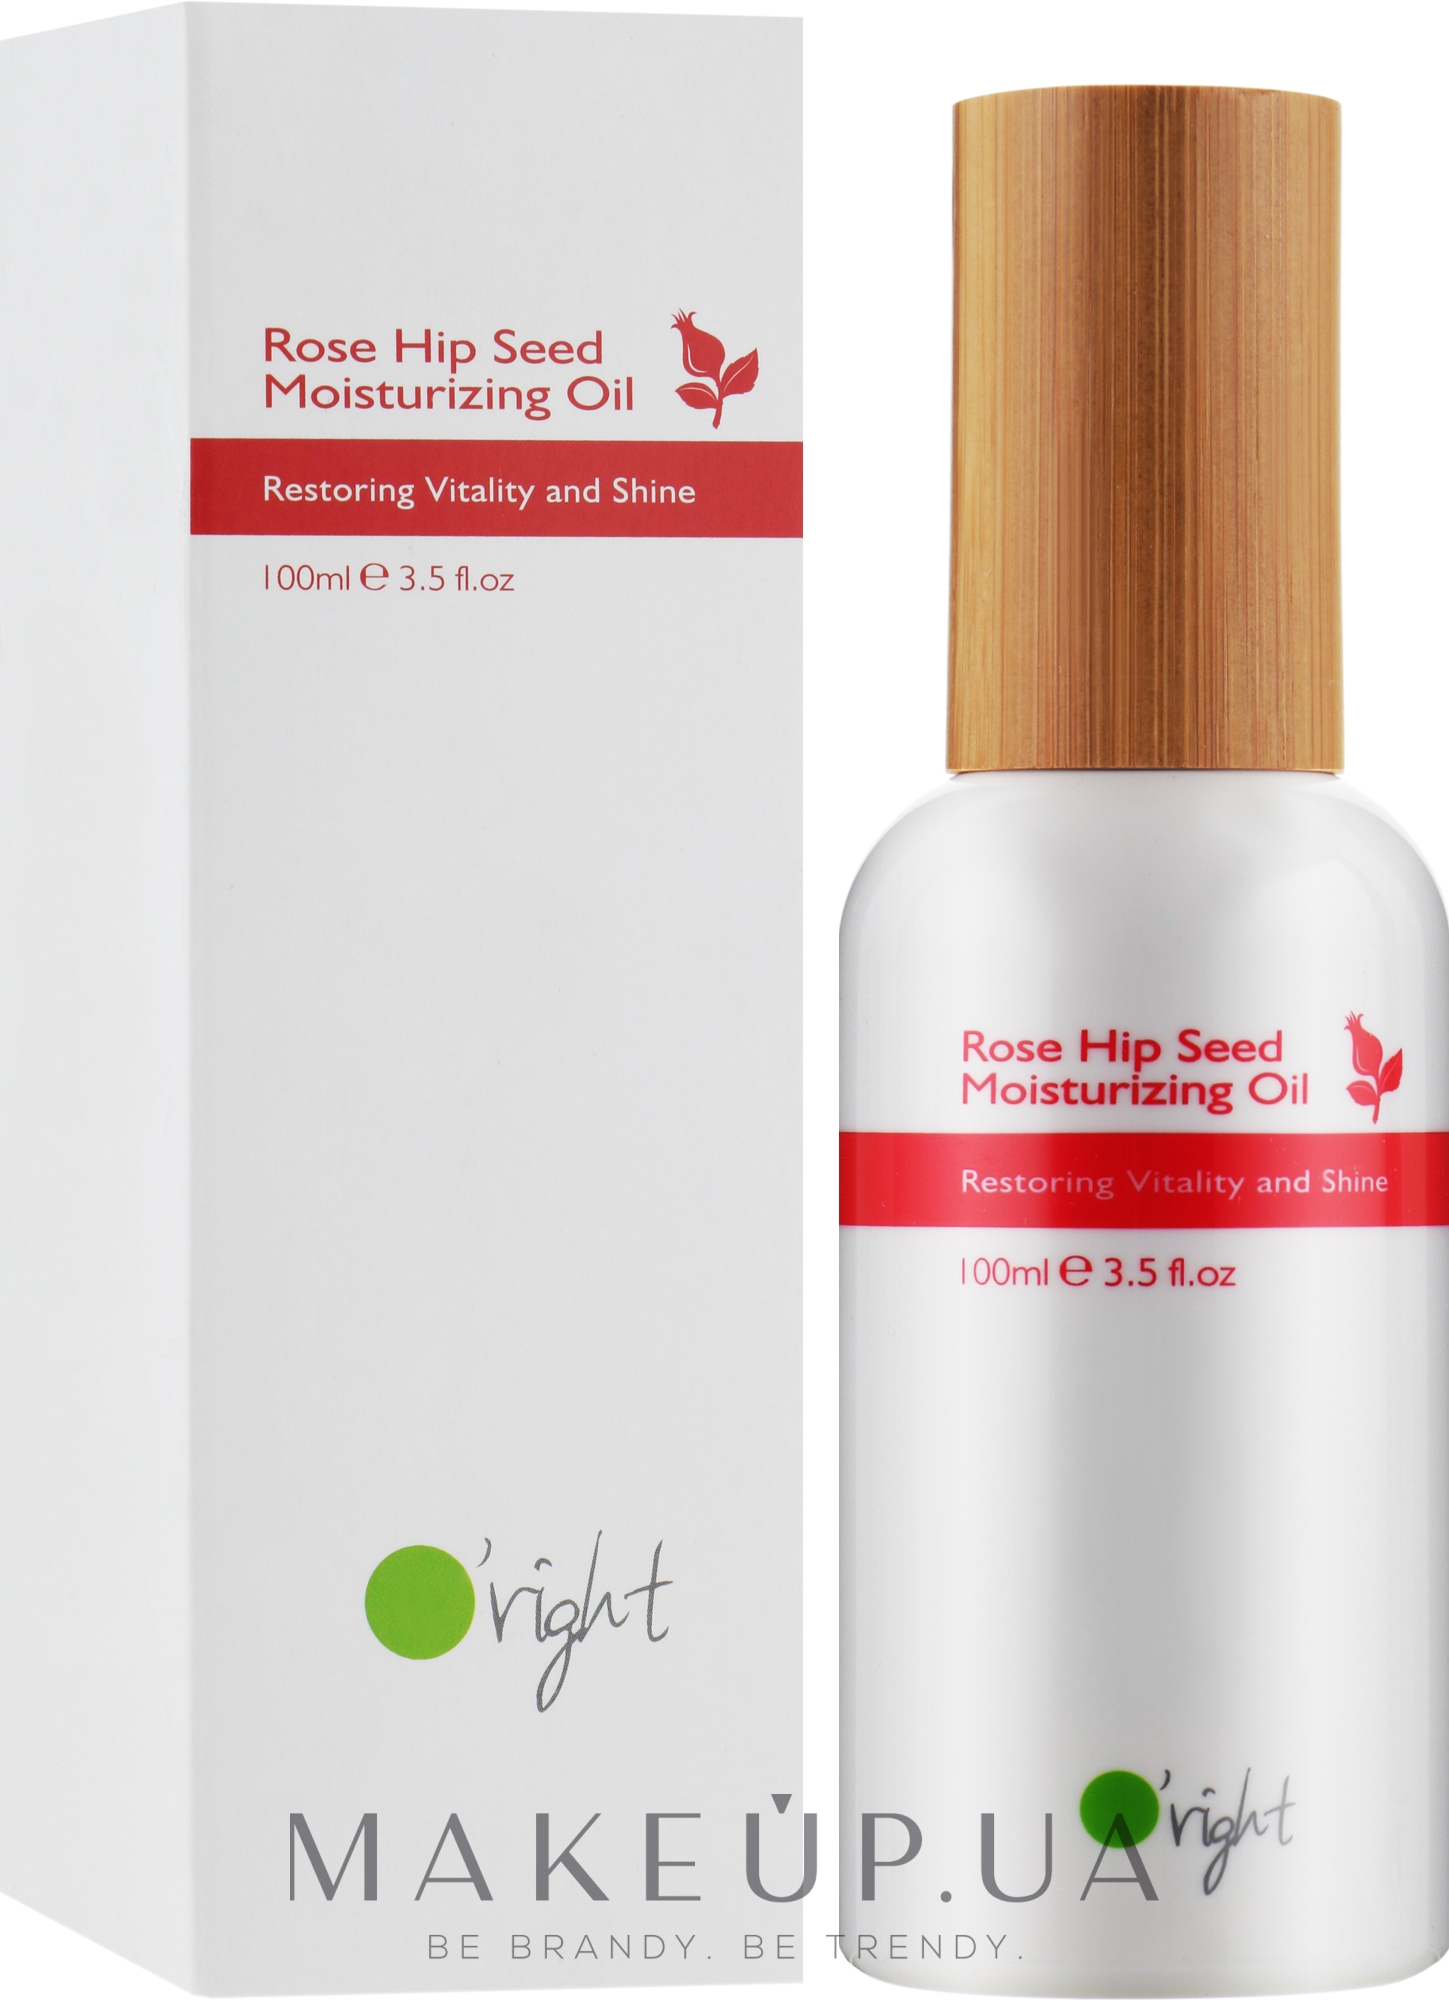 Органічна зволожувальна олія для волосся з насіння шипшини - O'right Rose Hip Seed Moisturizing Oil — фото 100ml